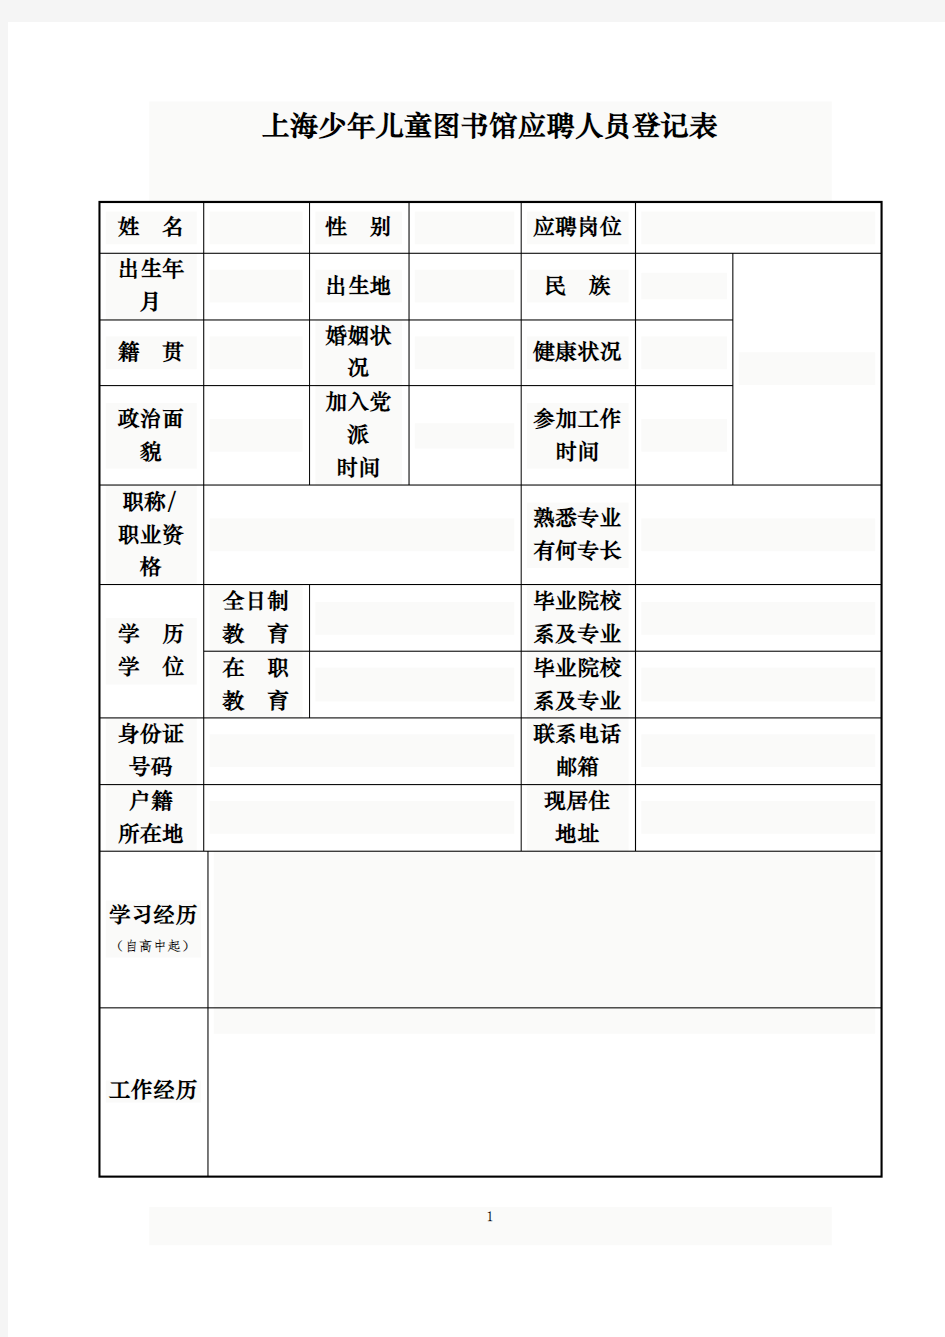 上海少年儿童图书馆应聘人员登记表